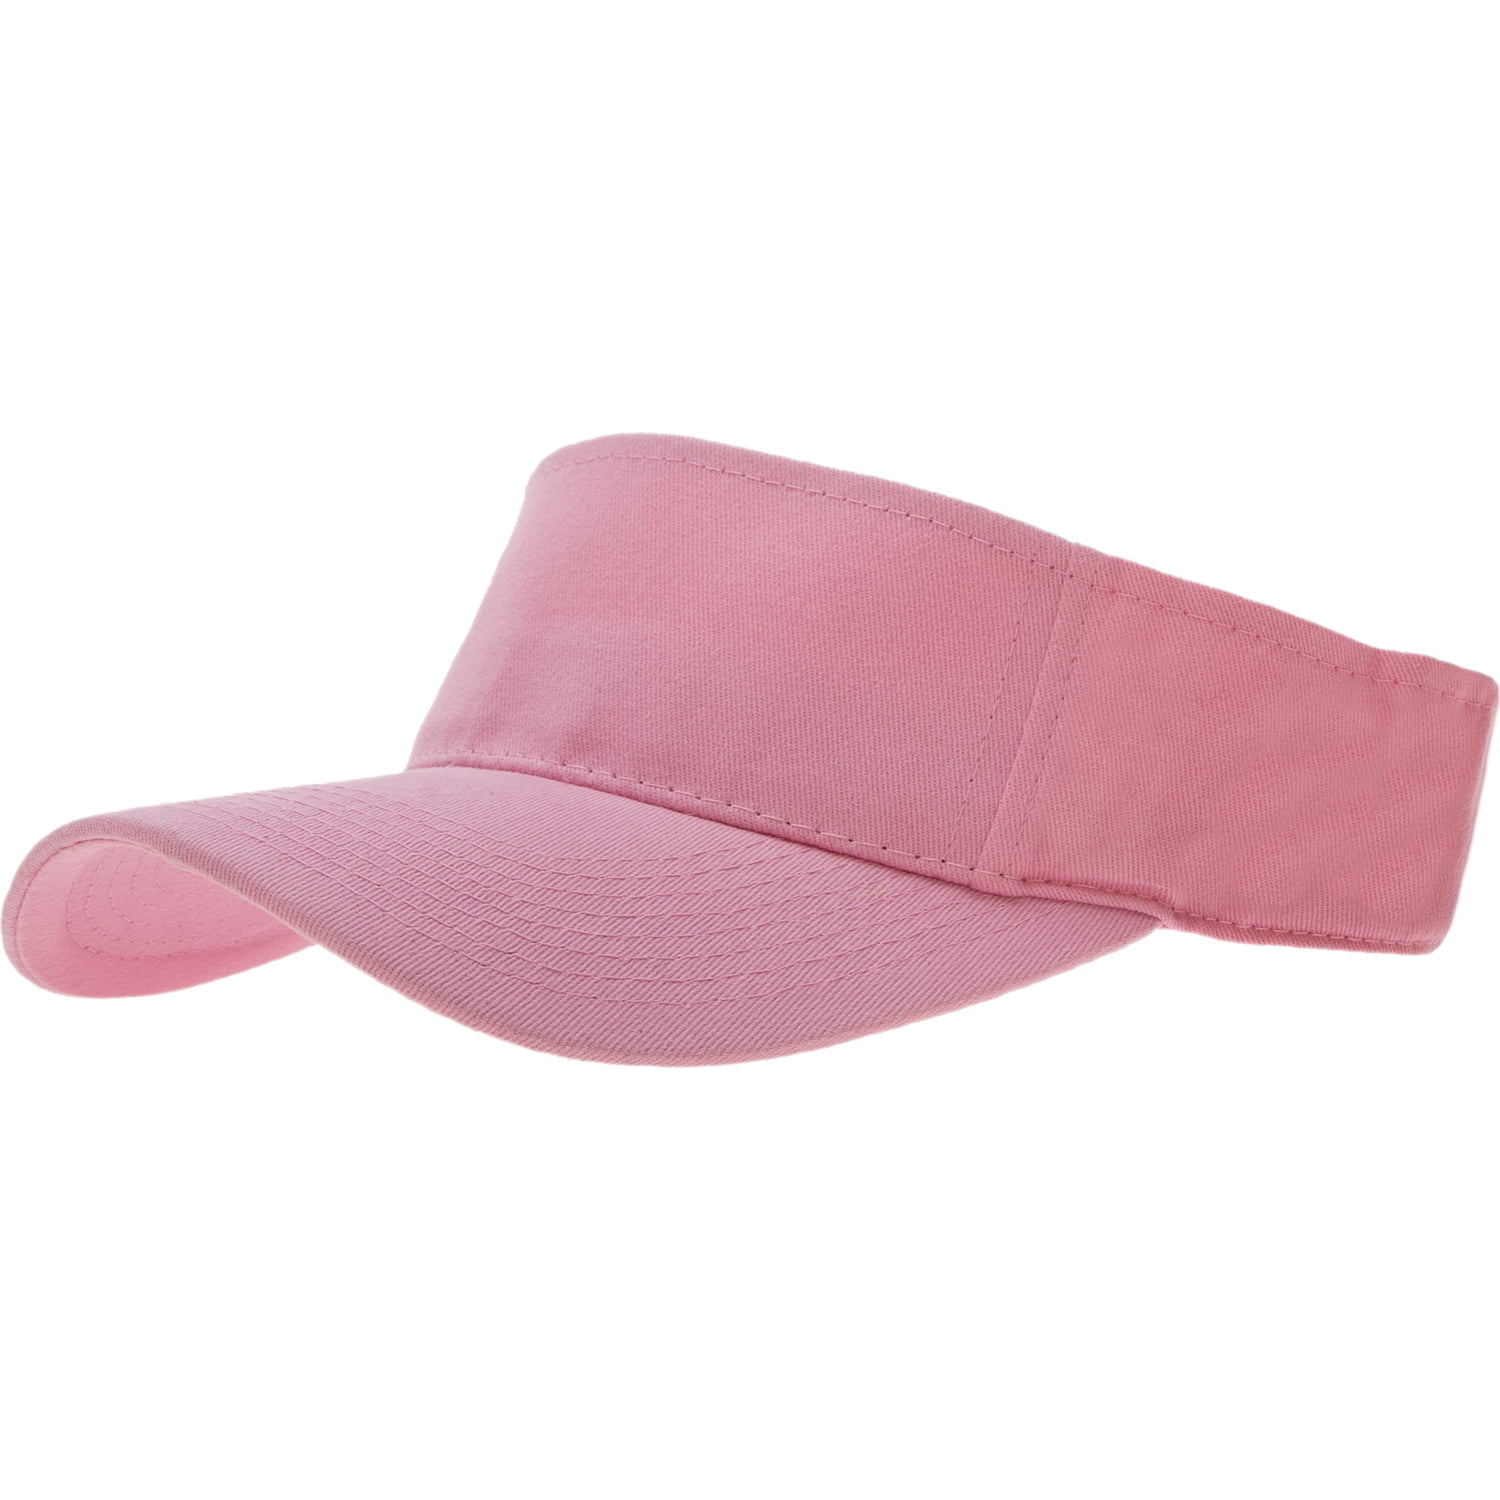 12pcs Light Pink Sun Visor Hat - Dozen Packed